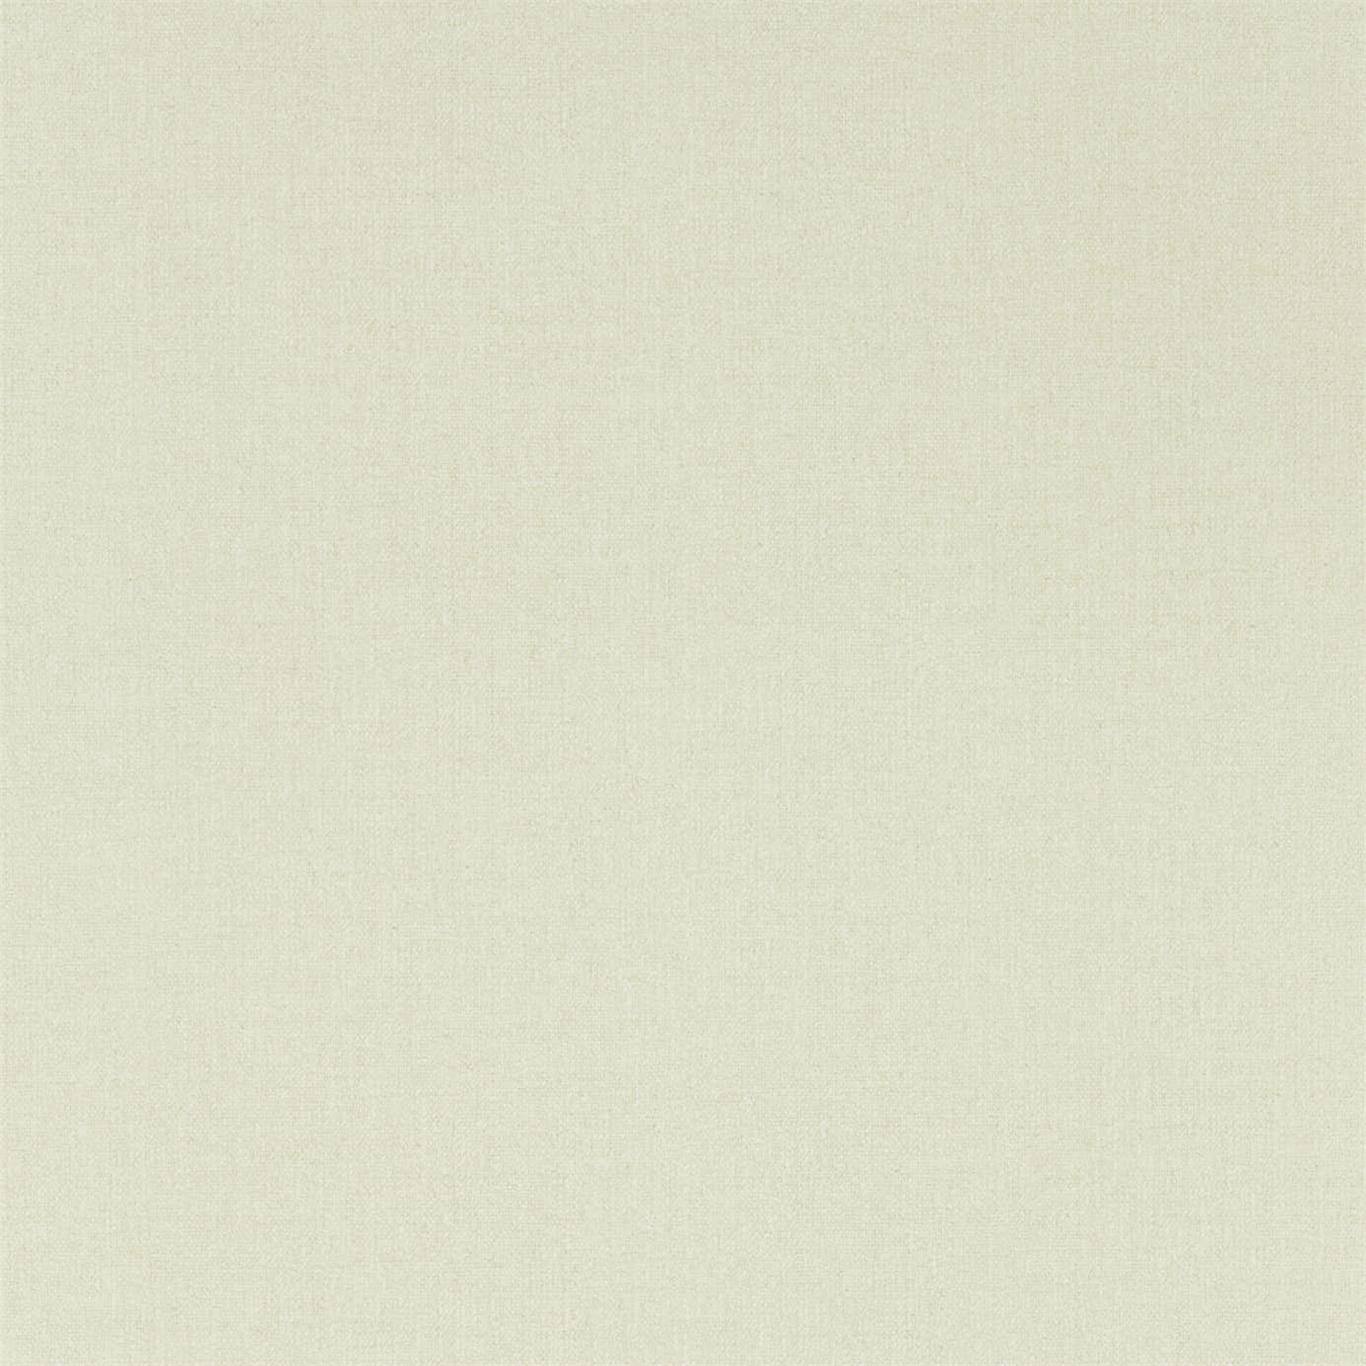 Soho Plain Birch White Wallpaper DCPW216798 by Sanderson